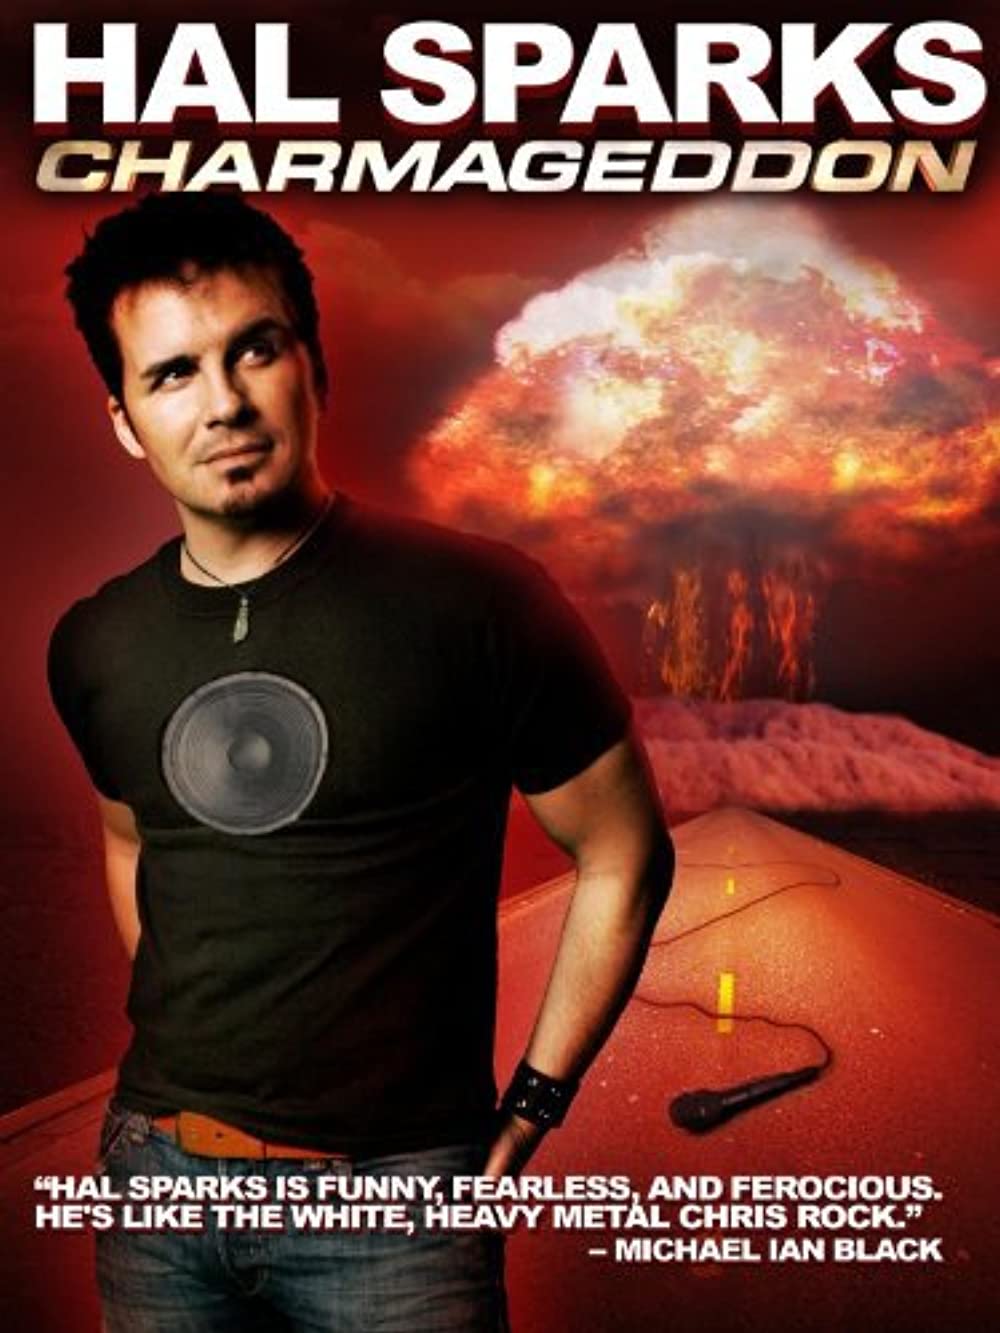 ดูหนังออนไลน์ฟรี Hal Sparks Charmageddon (2010) ฮัล สปาร์คส์ ชาร์มาเก็ดดอน [Soundtrack]